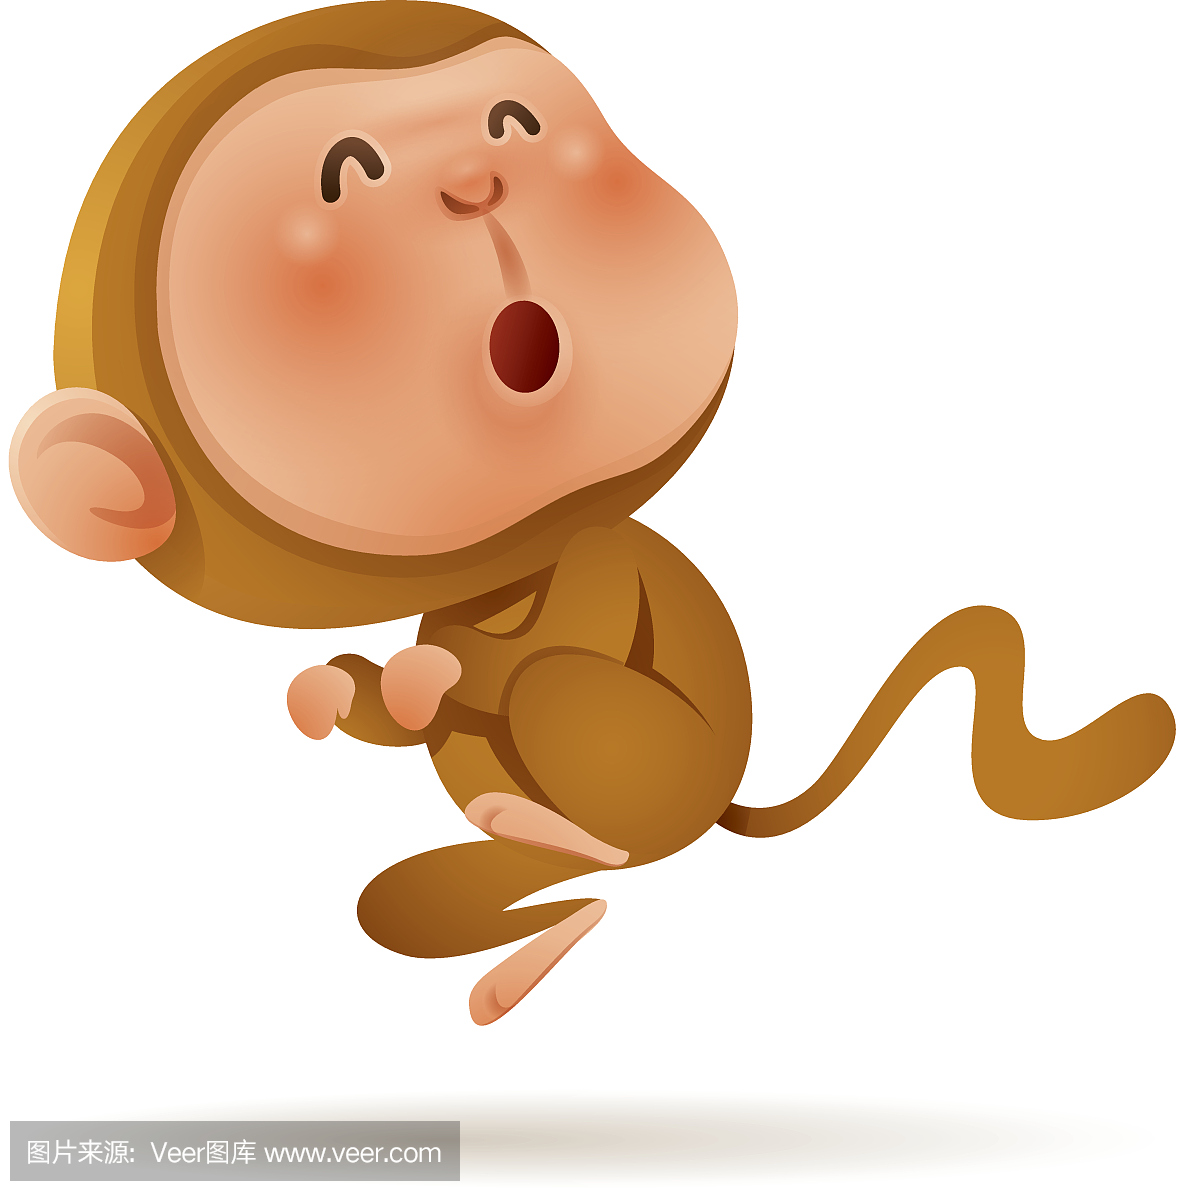 中国十二生肖 - 猴子。中国新年。